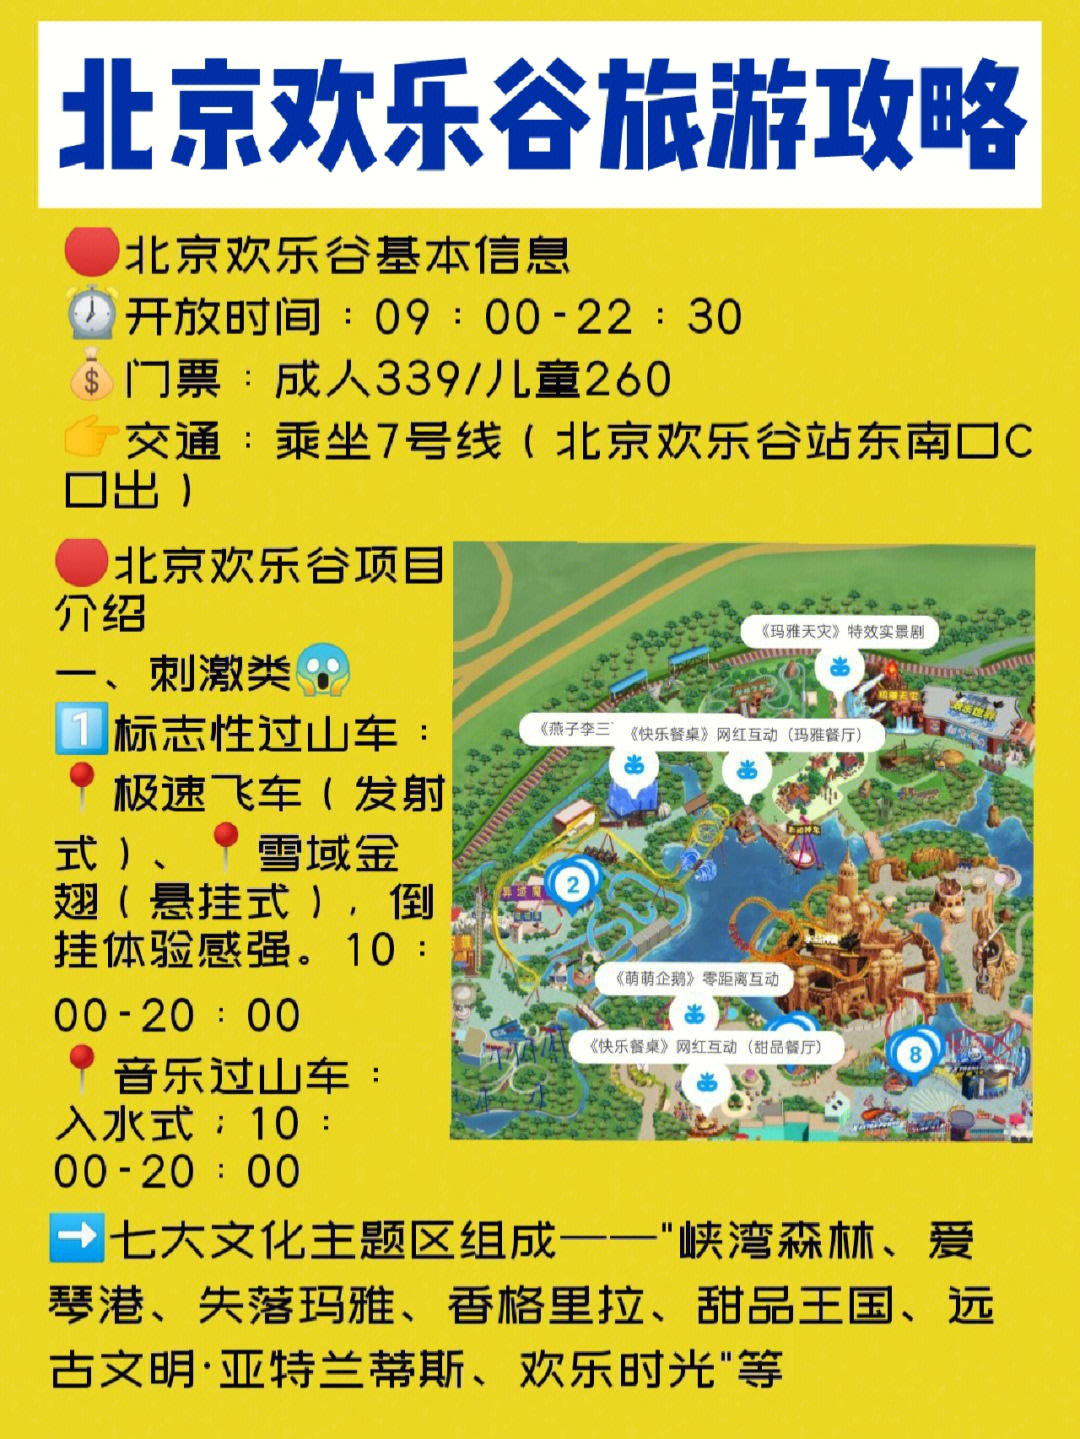 北京欢乐谷省时游玩攻略演出时间游玩路线